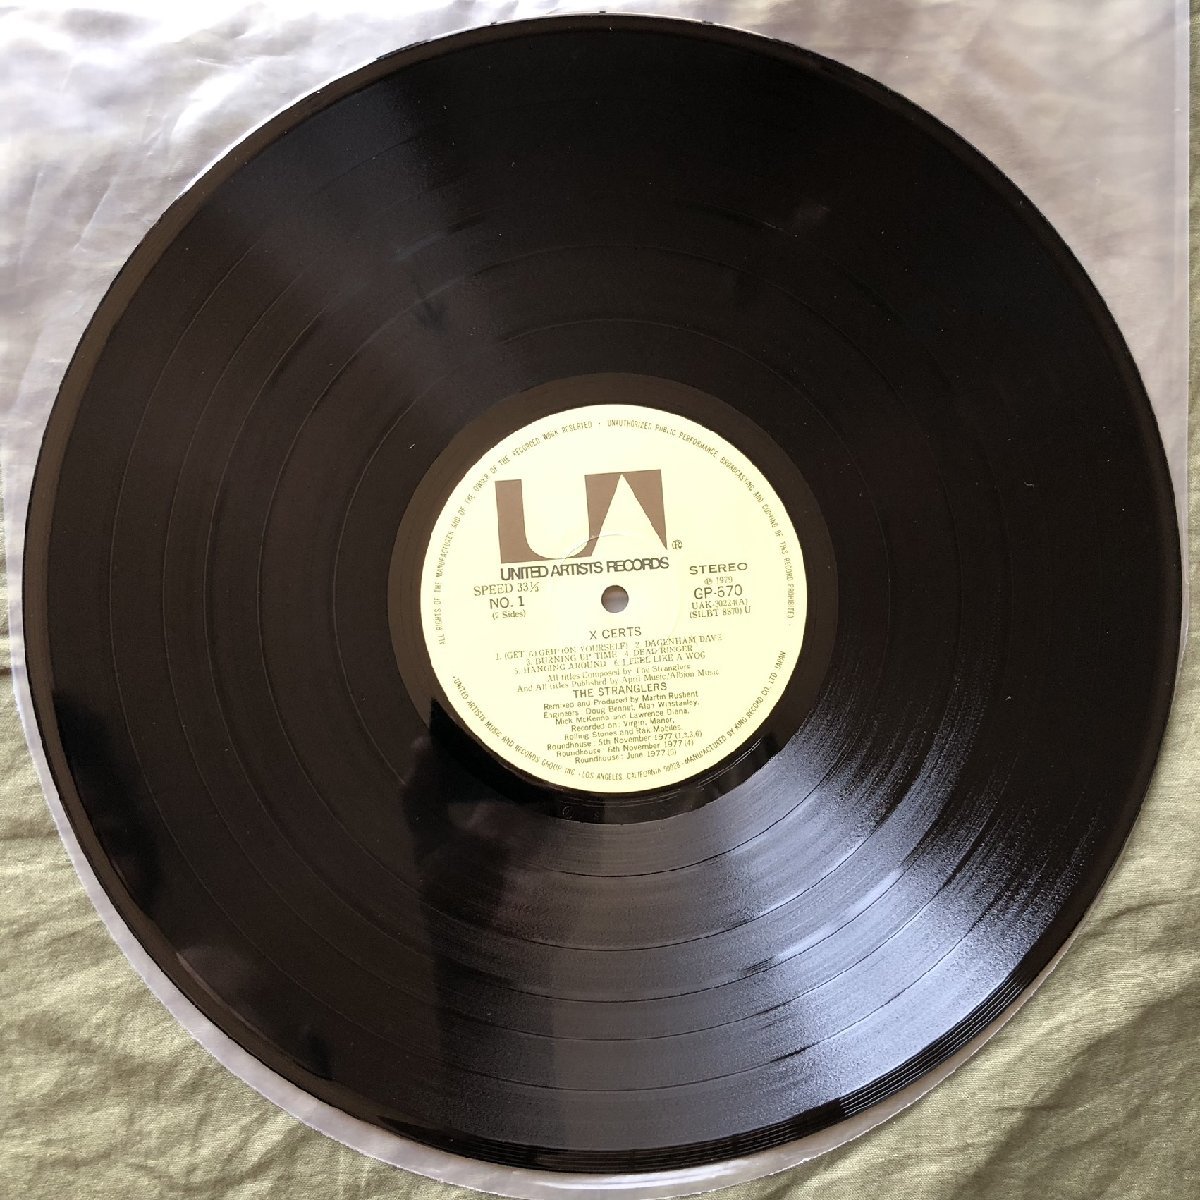 傷なし美盤 1979年 国内盤 ストラングラーズ The Stranglers LPレコード ストラングラーズ・ライヴ X Certs シングル欠品 J.J. Burnel_画像8